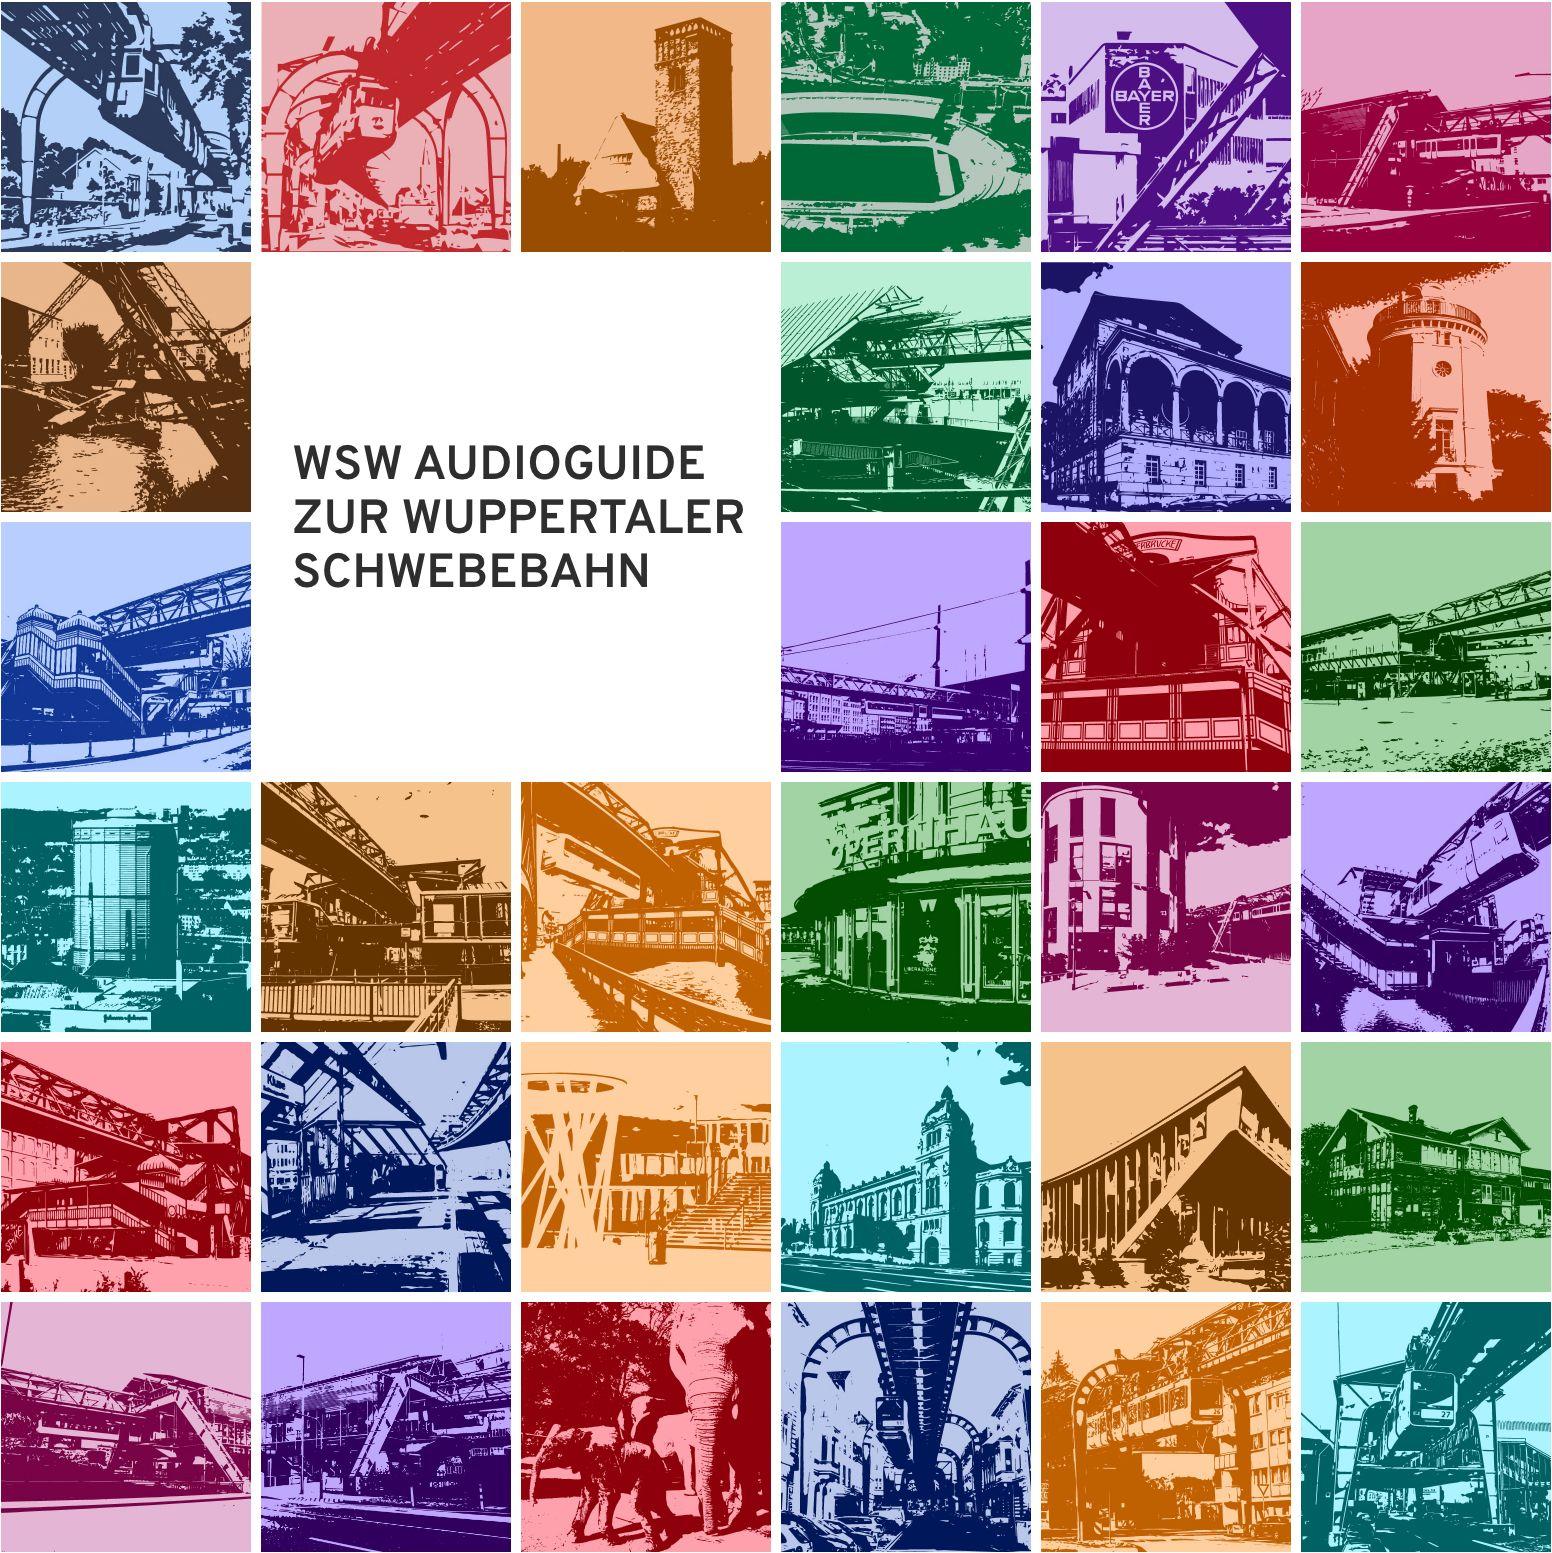 WSW Audioguide - Zur Wuppertaler Schwebebahn